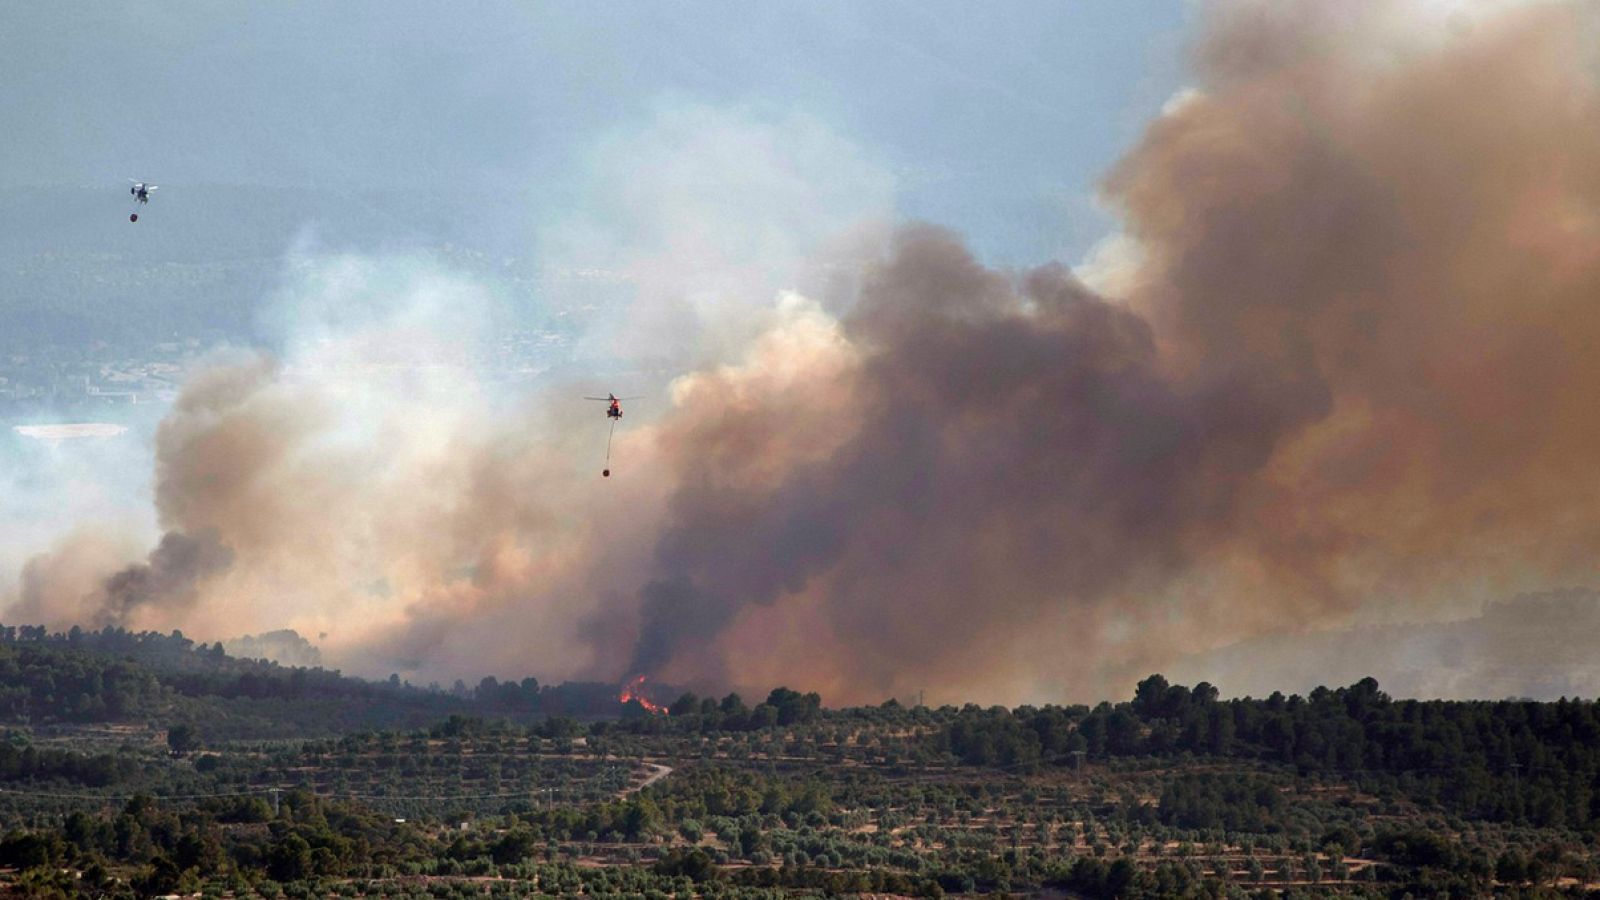 Incendio en Tarragona: Los bomberos se enfrentan al "peor día" para intentar controlar el incendio de Ribera d'Ebre